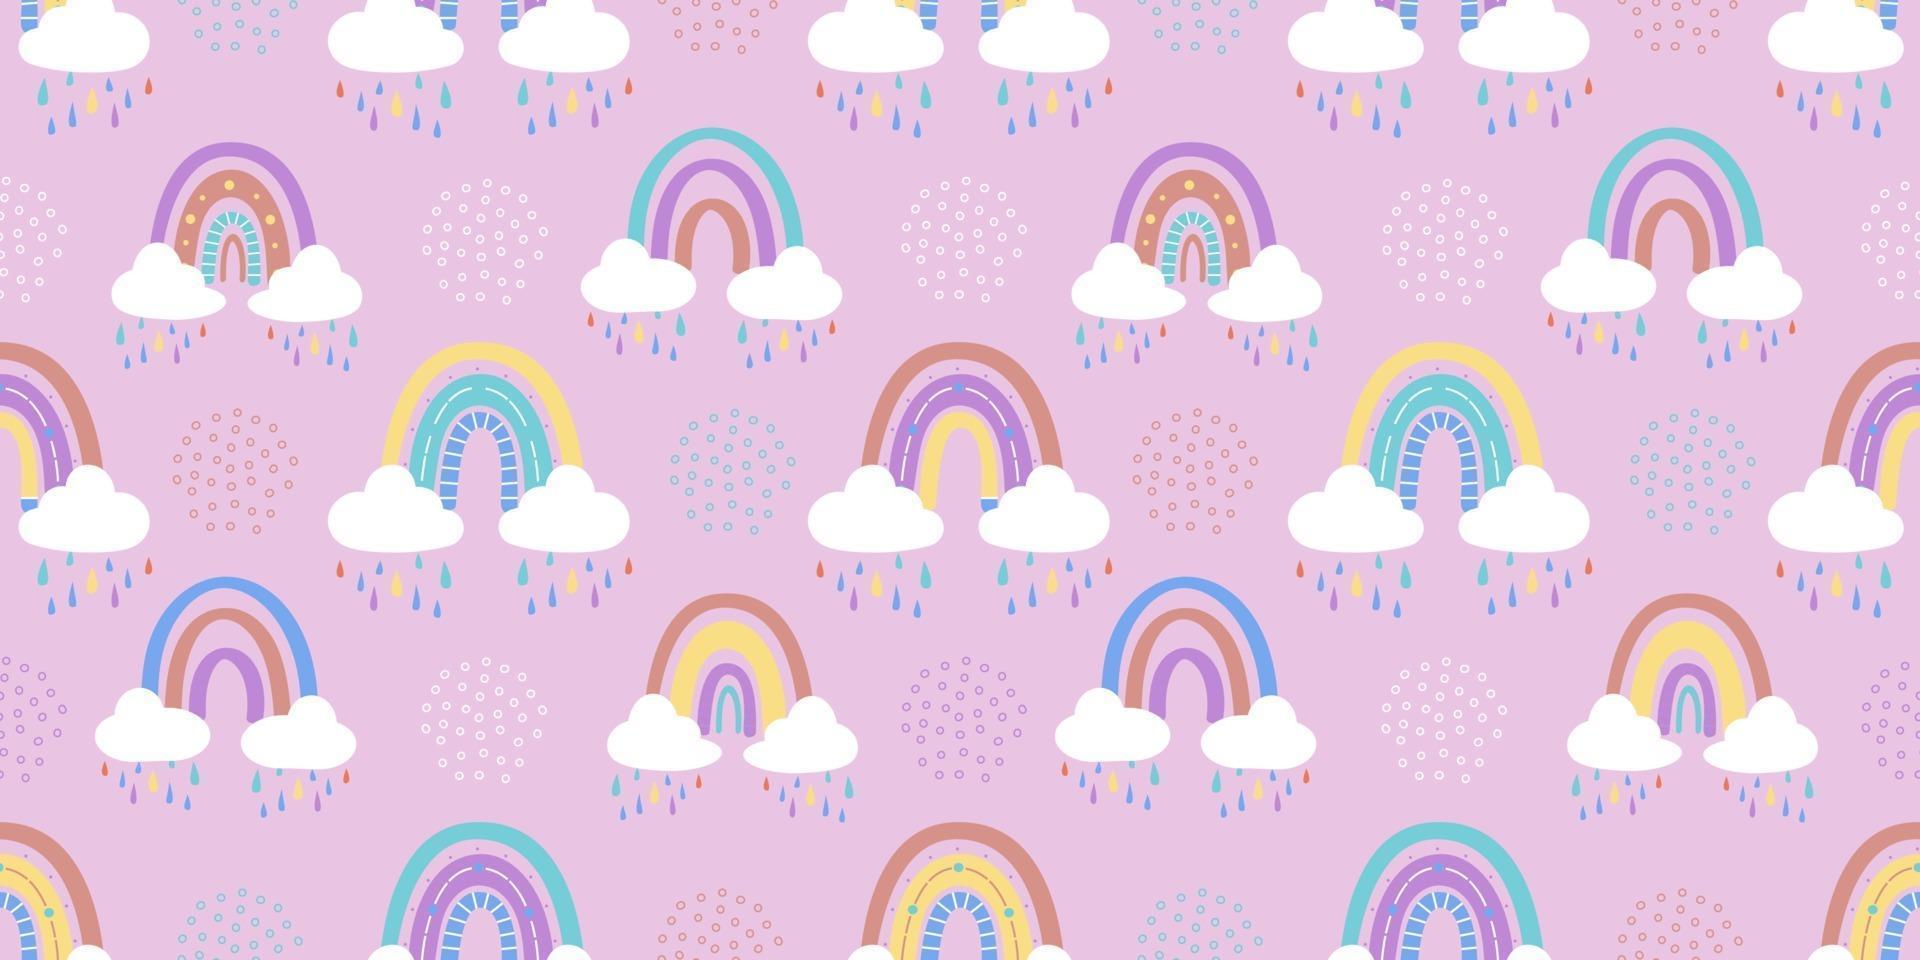 abstrakter Regenbogen mit Wolken und Regentropfen, Kritzeleien und Kreisen in einem nahtlosen Muster. Kindermuster in gedeckten Pastellfarben. handgezeichnete Vektorillustration. Design für Textilien, Verpackungen vektor